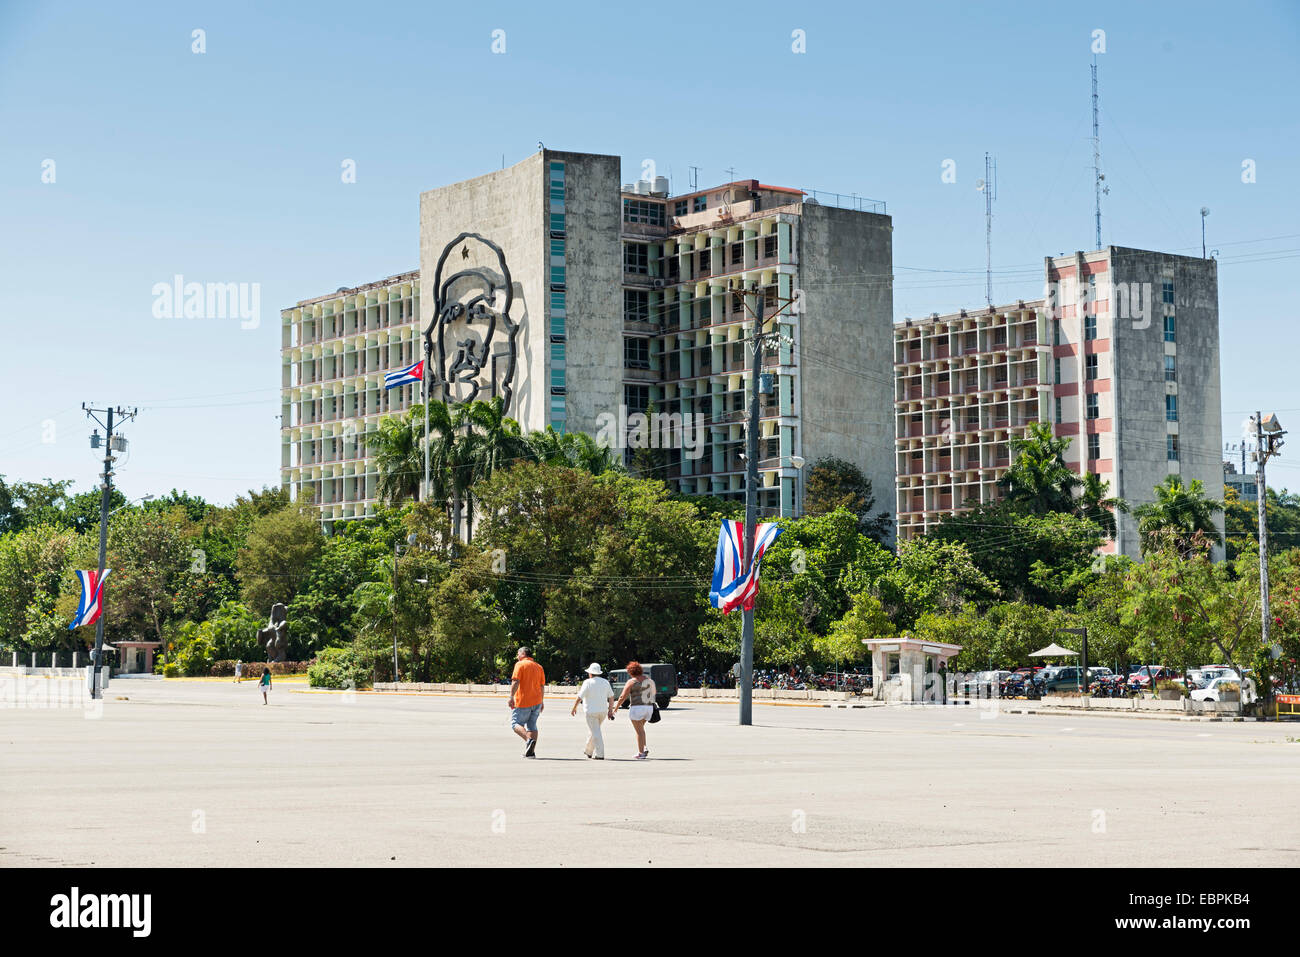 - La Havane, 5 mai : drapeau cubain et la sculpture de Che Guevara sur la façade du ministère de l'intérieur, Plaza de la Revolucion, La Havane, Cuba Banque D'Images